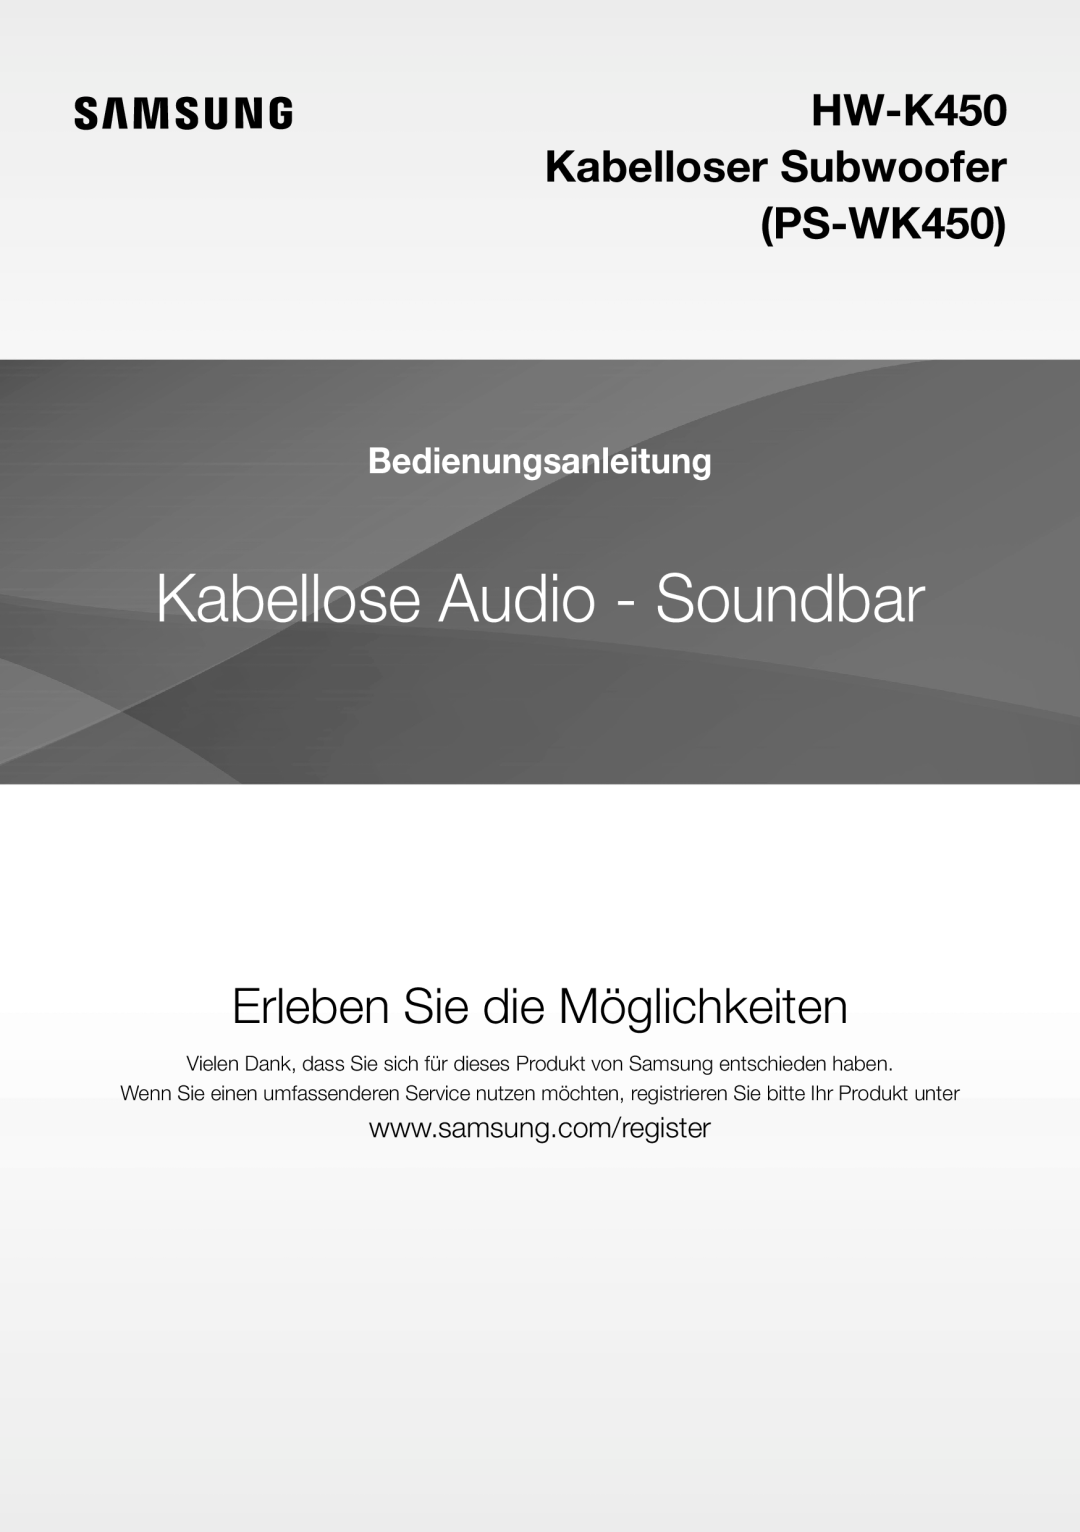 Samsung HW-K450/ZF manual Kabellose Audio - Soundbar, Erleben Sie die Möglichkeiten, HW-K450 Kabelloser Subwoofer PS-WK450 